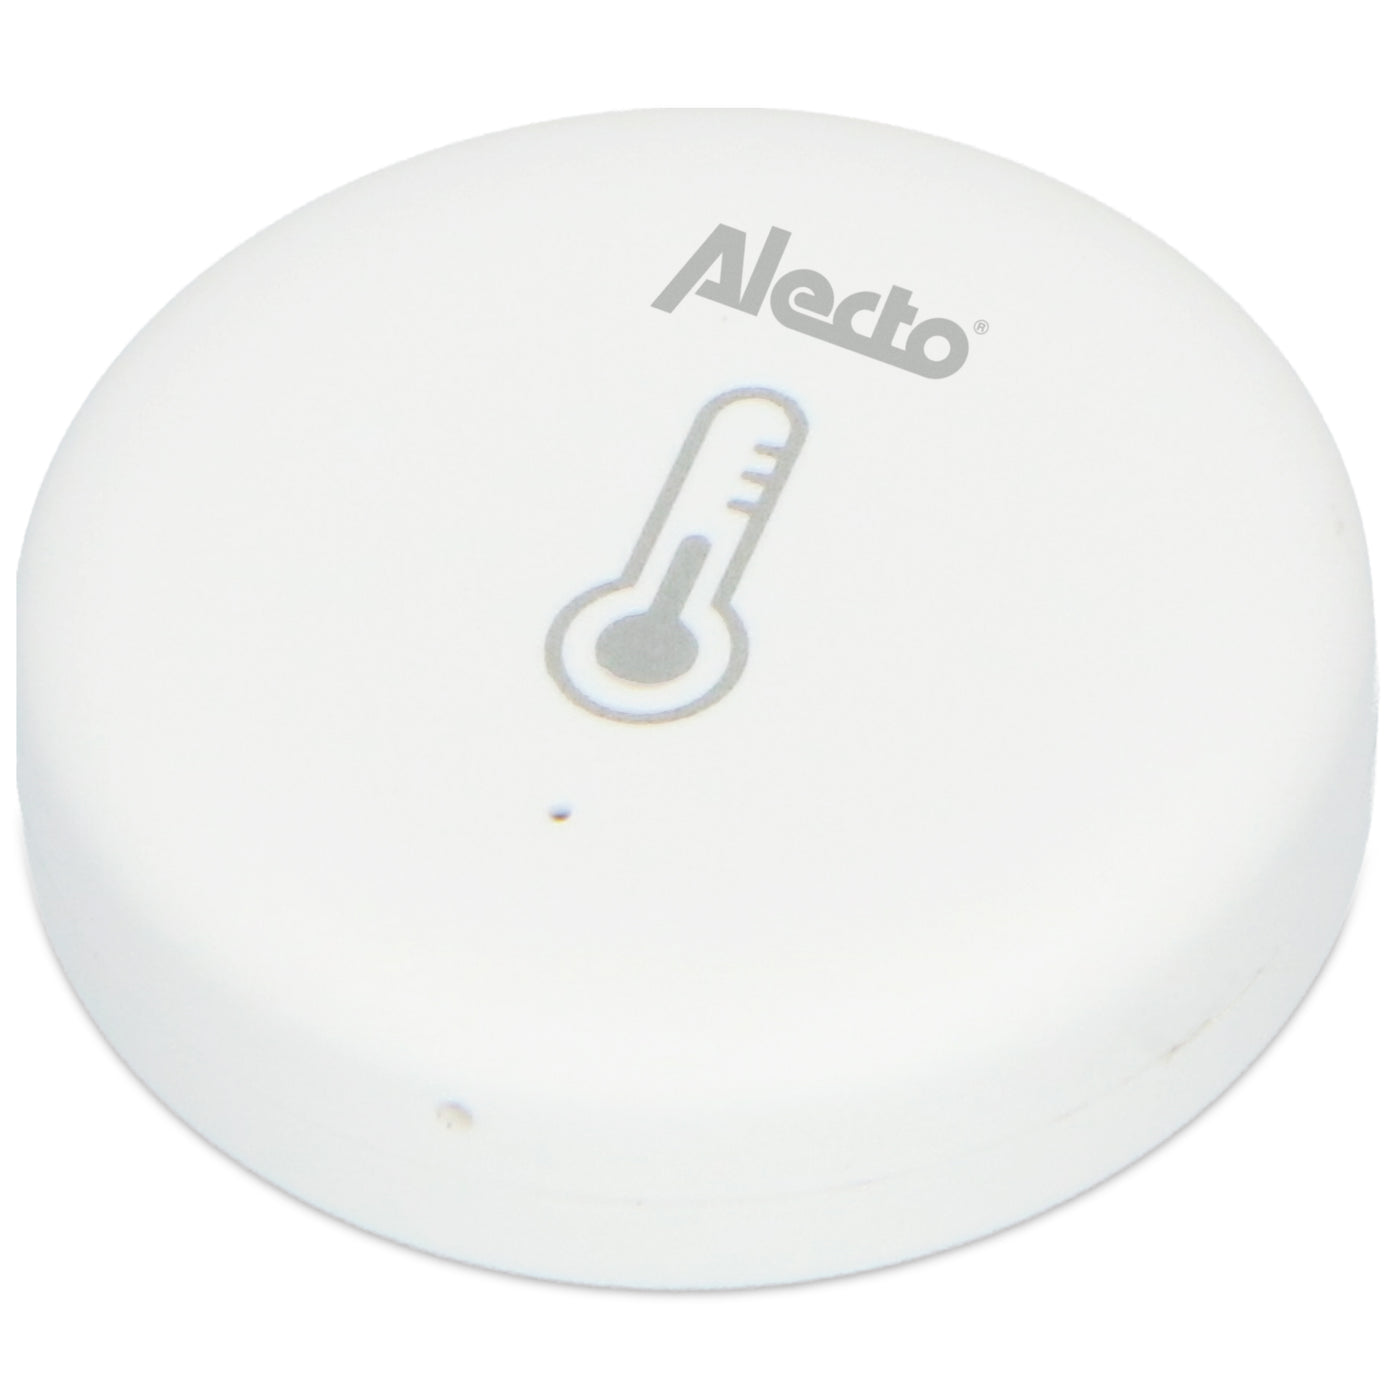 Alecto SMART-TEMP10 - Capteur de température et d'humidité intelligent Zigbee, blanc